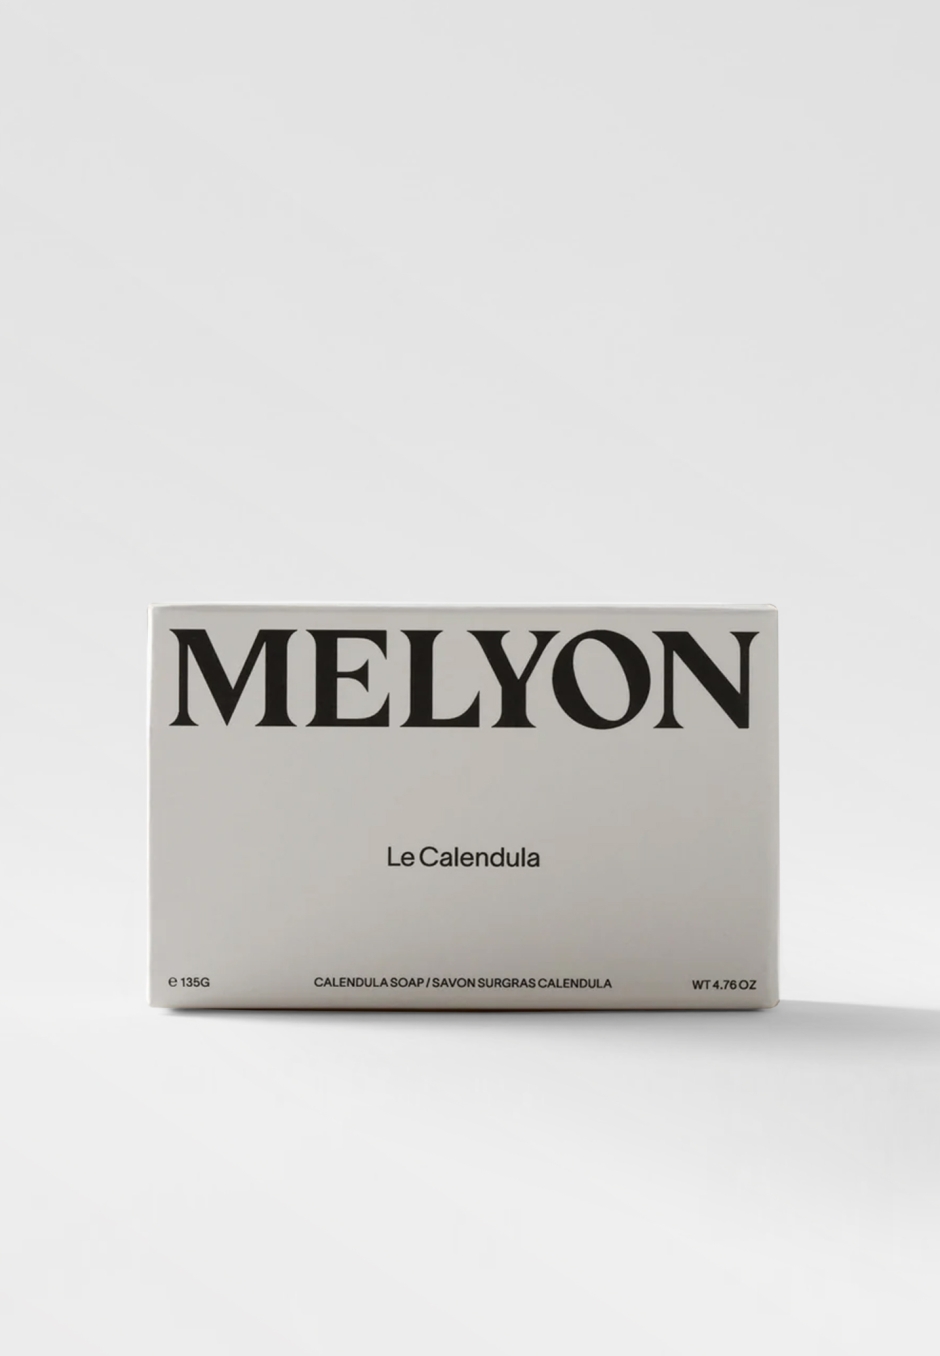 Melyon Soap Le Calendula